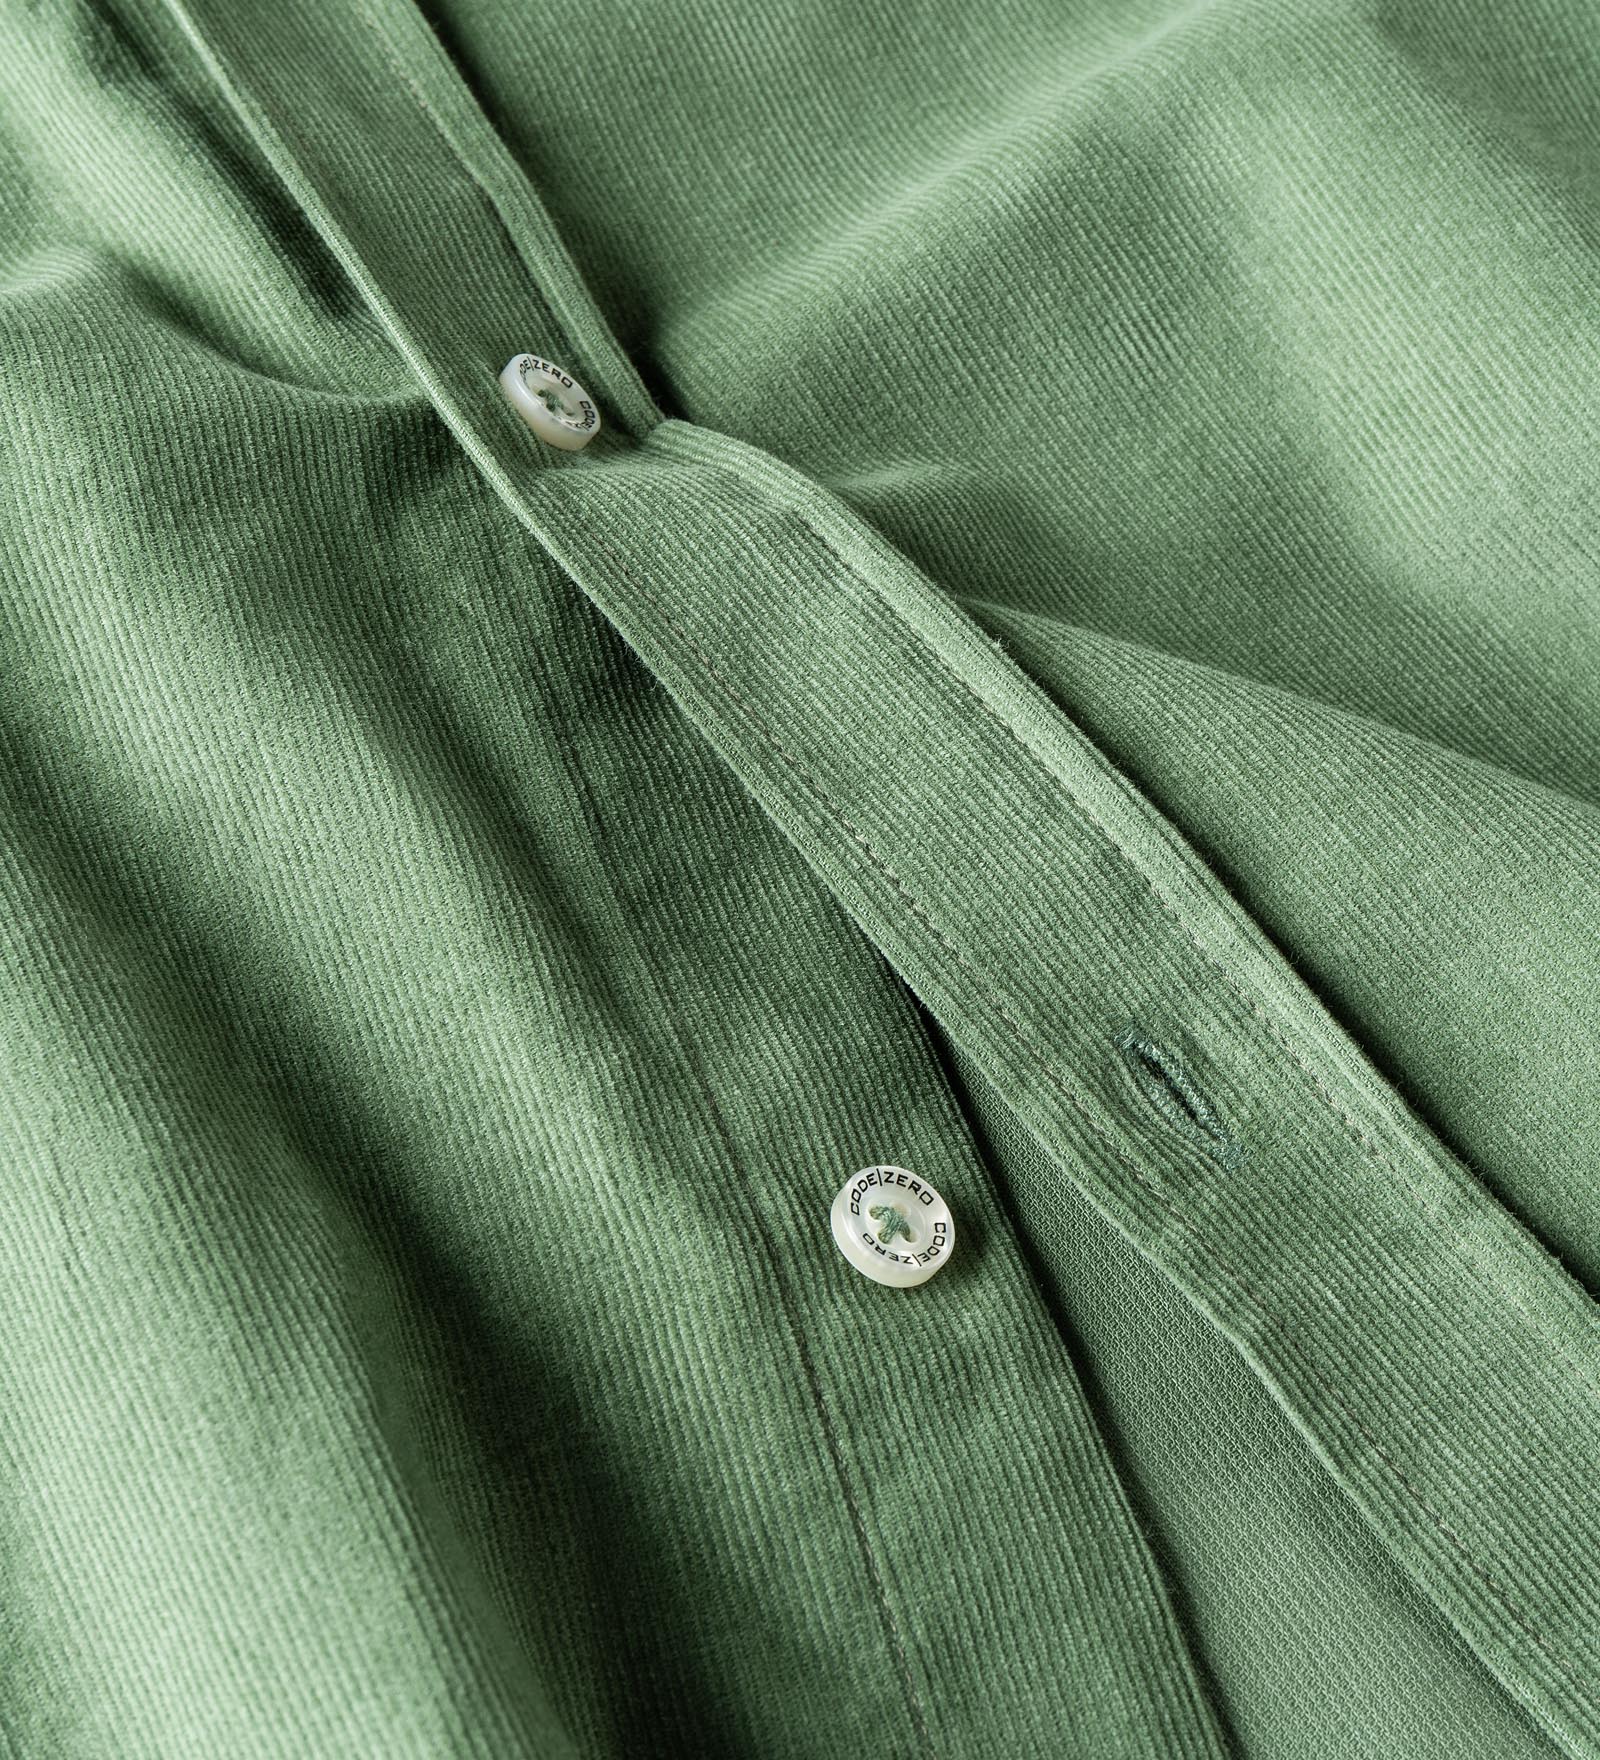 Green cord shirt